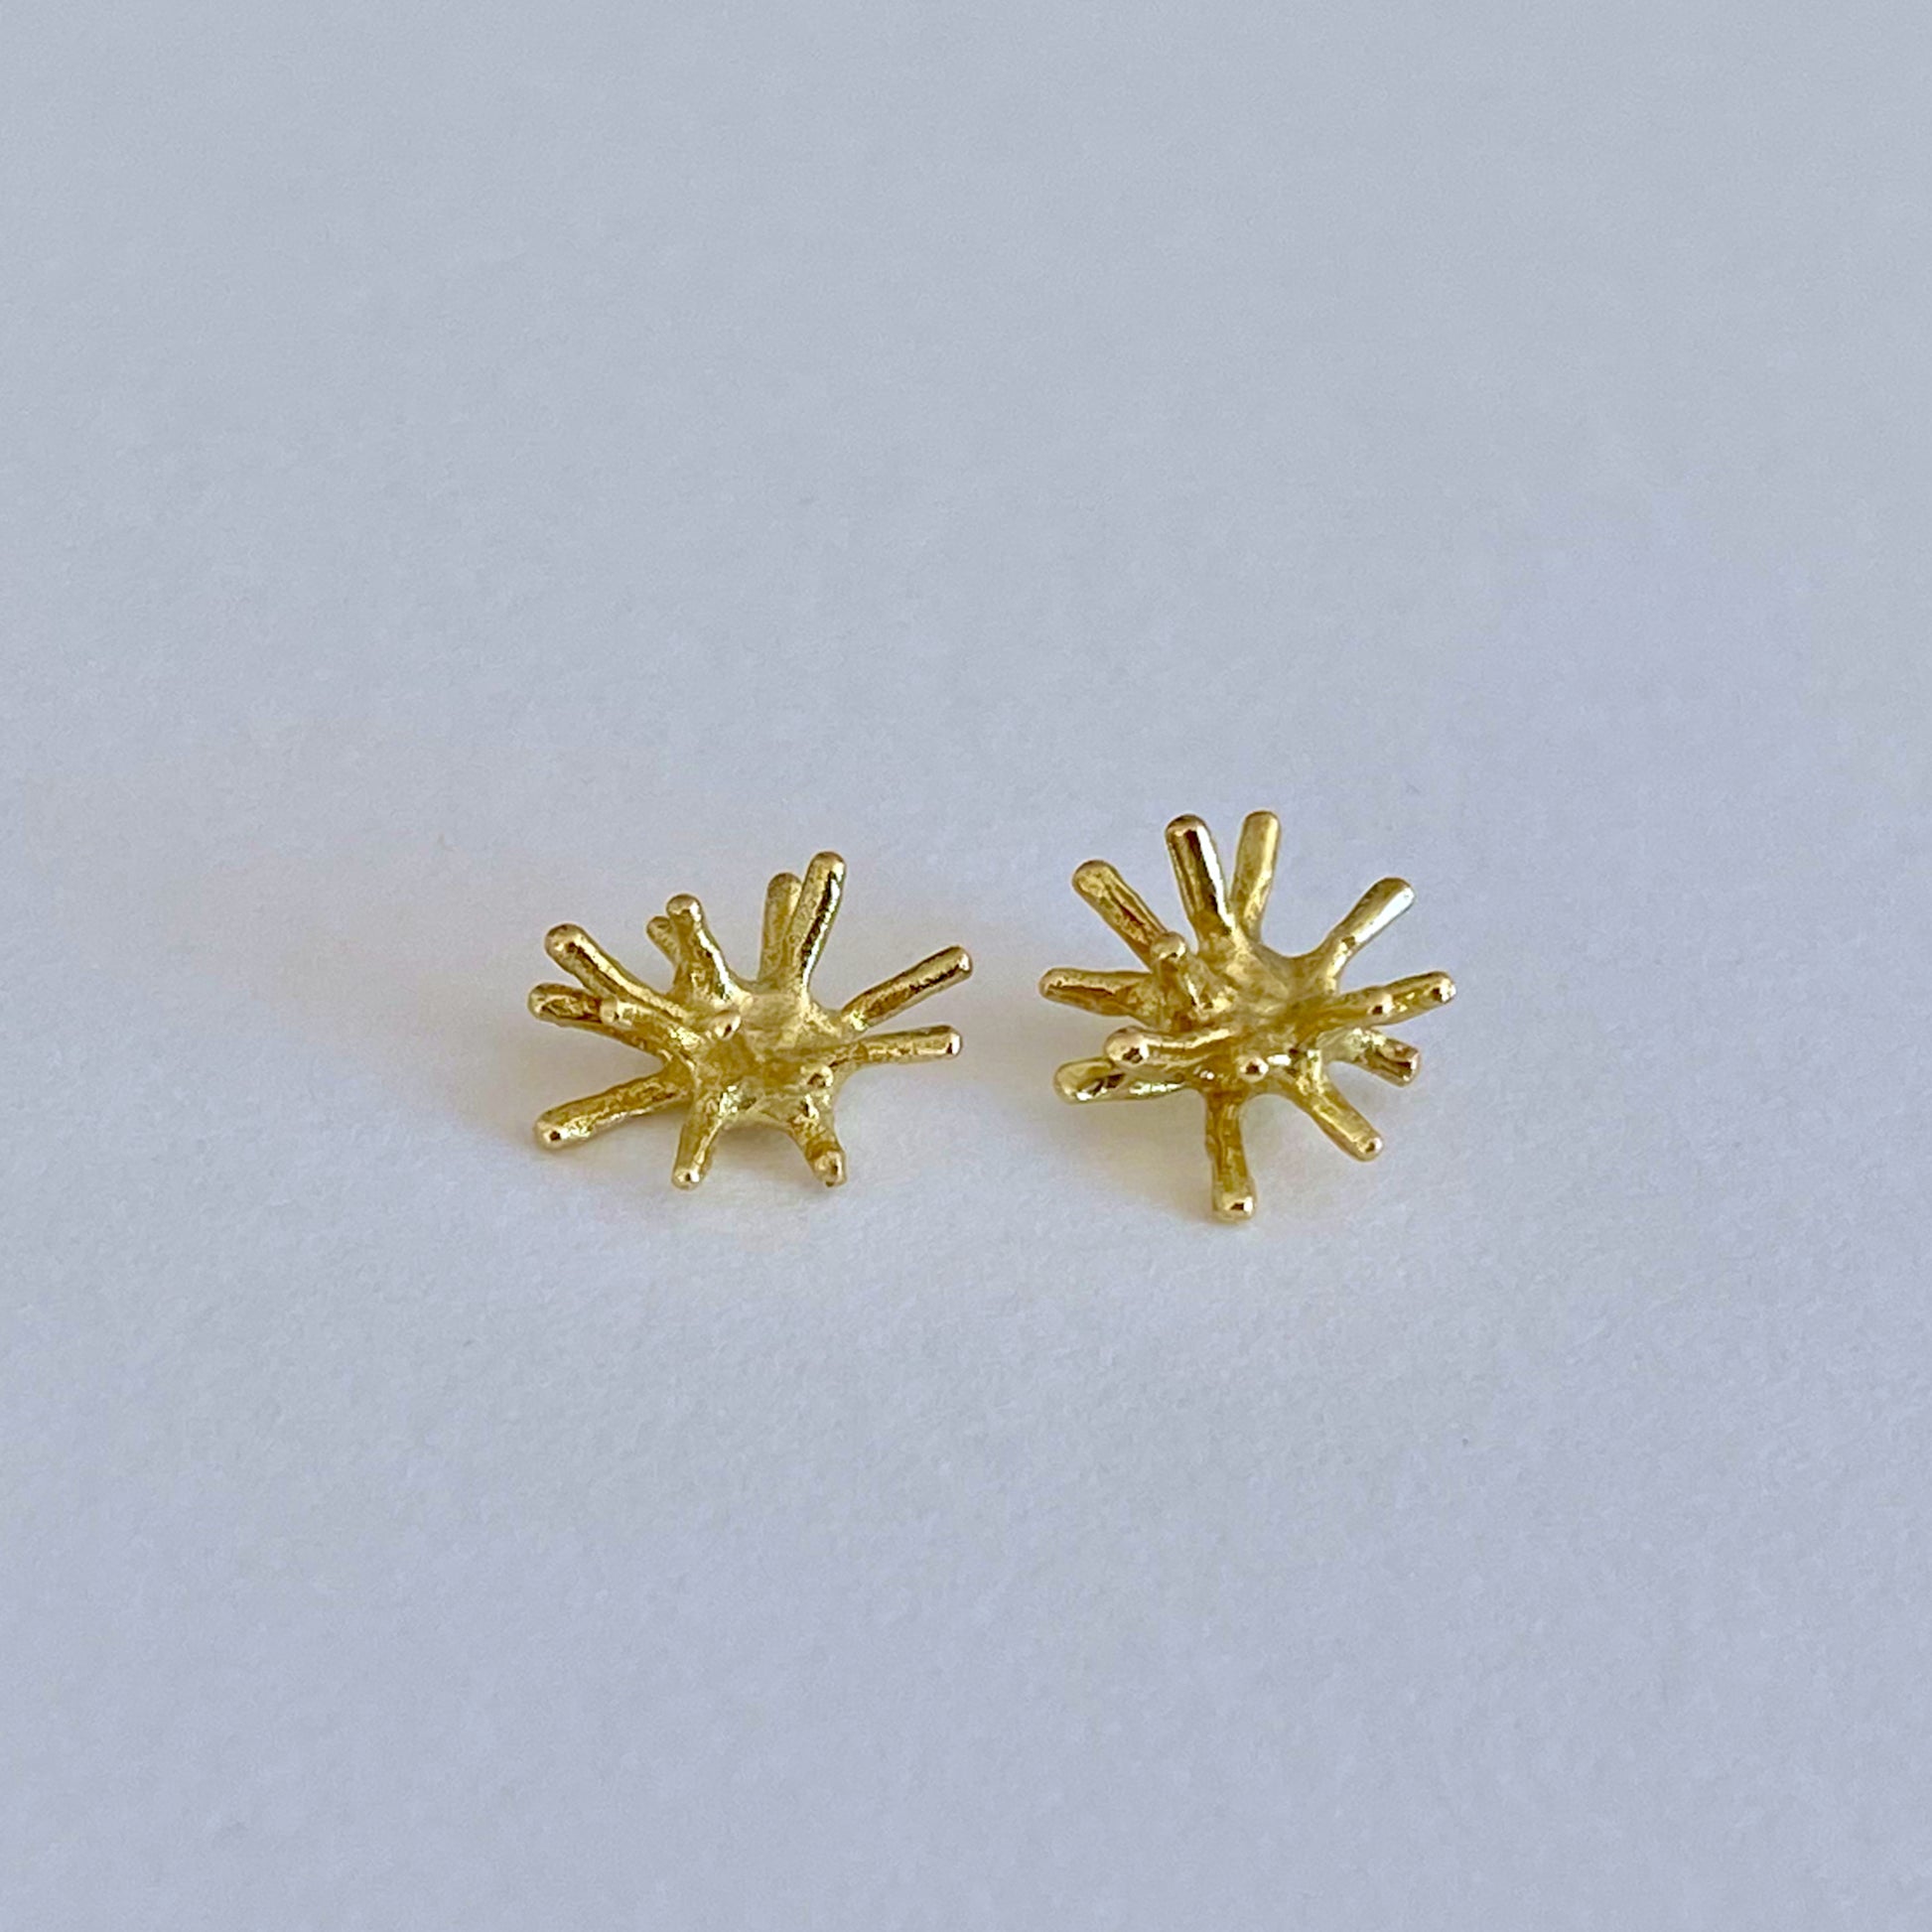 Sea Urchin stud earrings. Handmade 18kt solid gold.